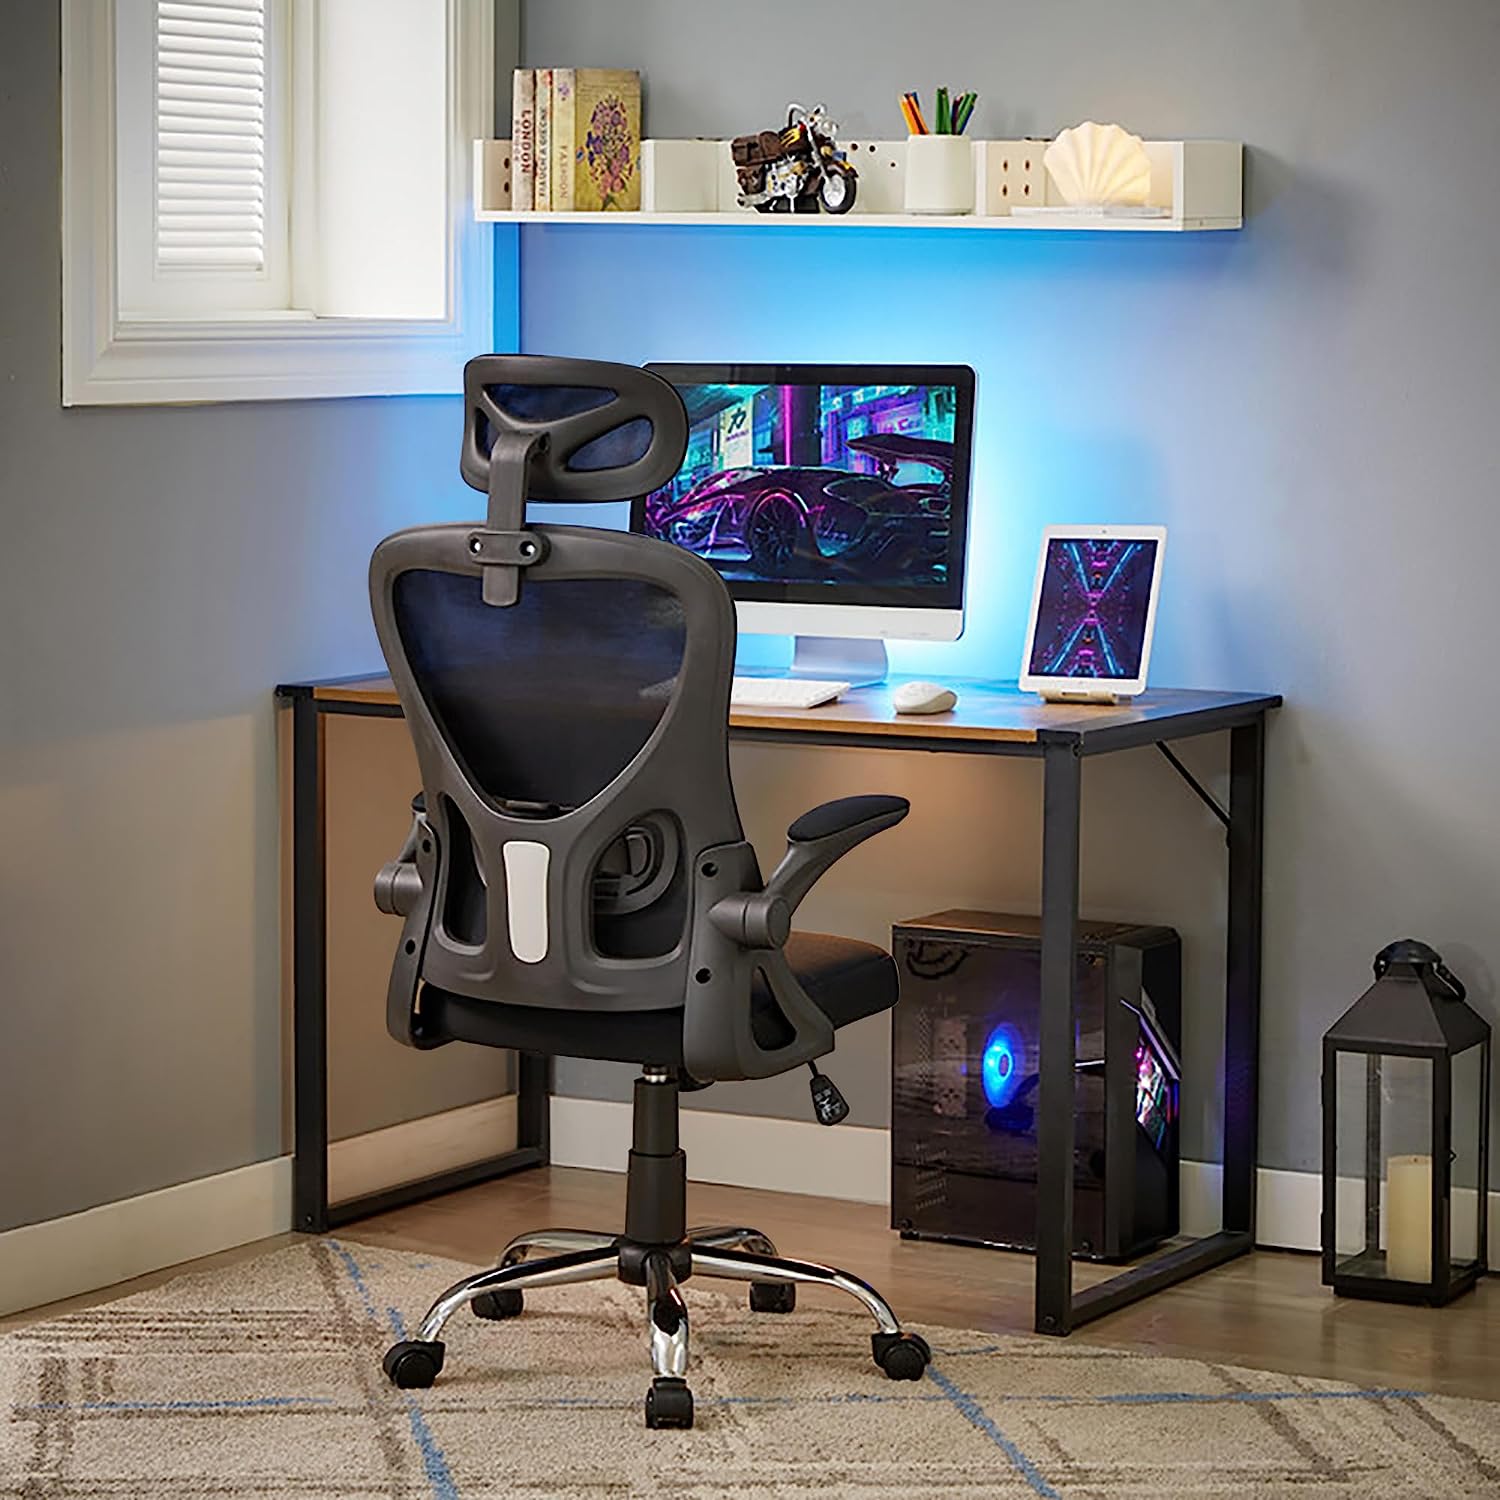 Mesh High Back Ergonomic Office Chair Lumbar Support Pillow Computer Desk  Chair